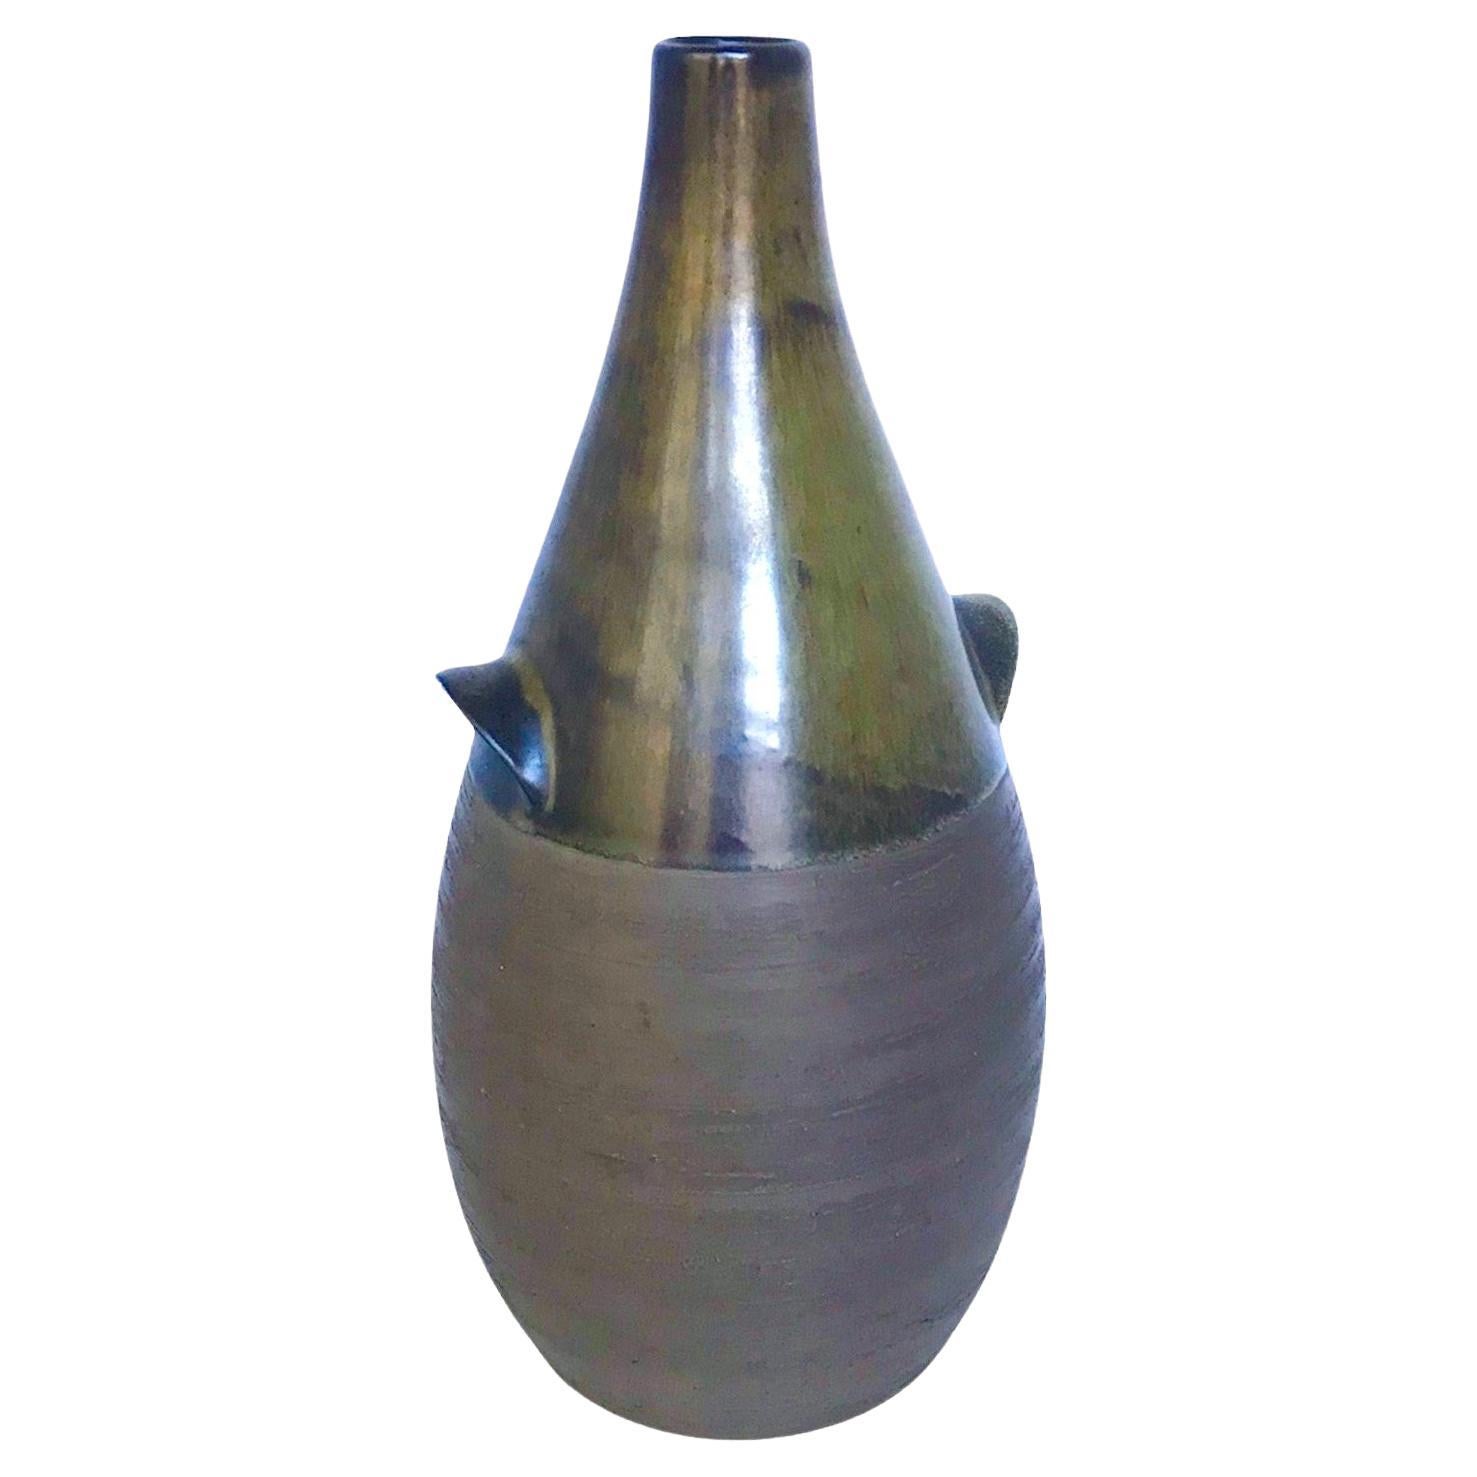 (okoko)Scandinavian Mid Century Modern Pottery Bottle Vase from BR Denmark 1960s For Sale